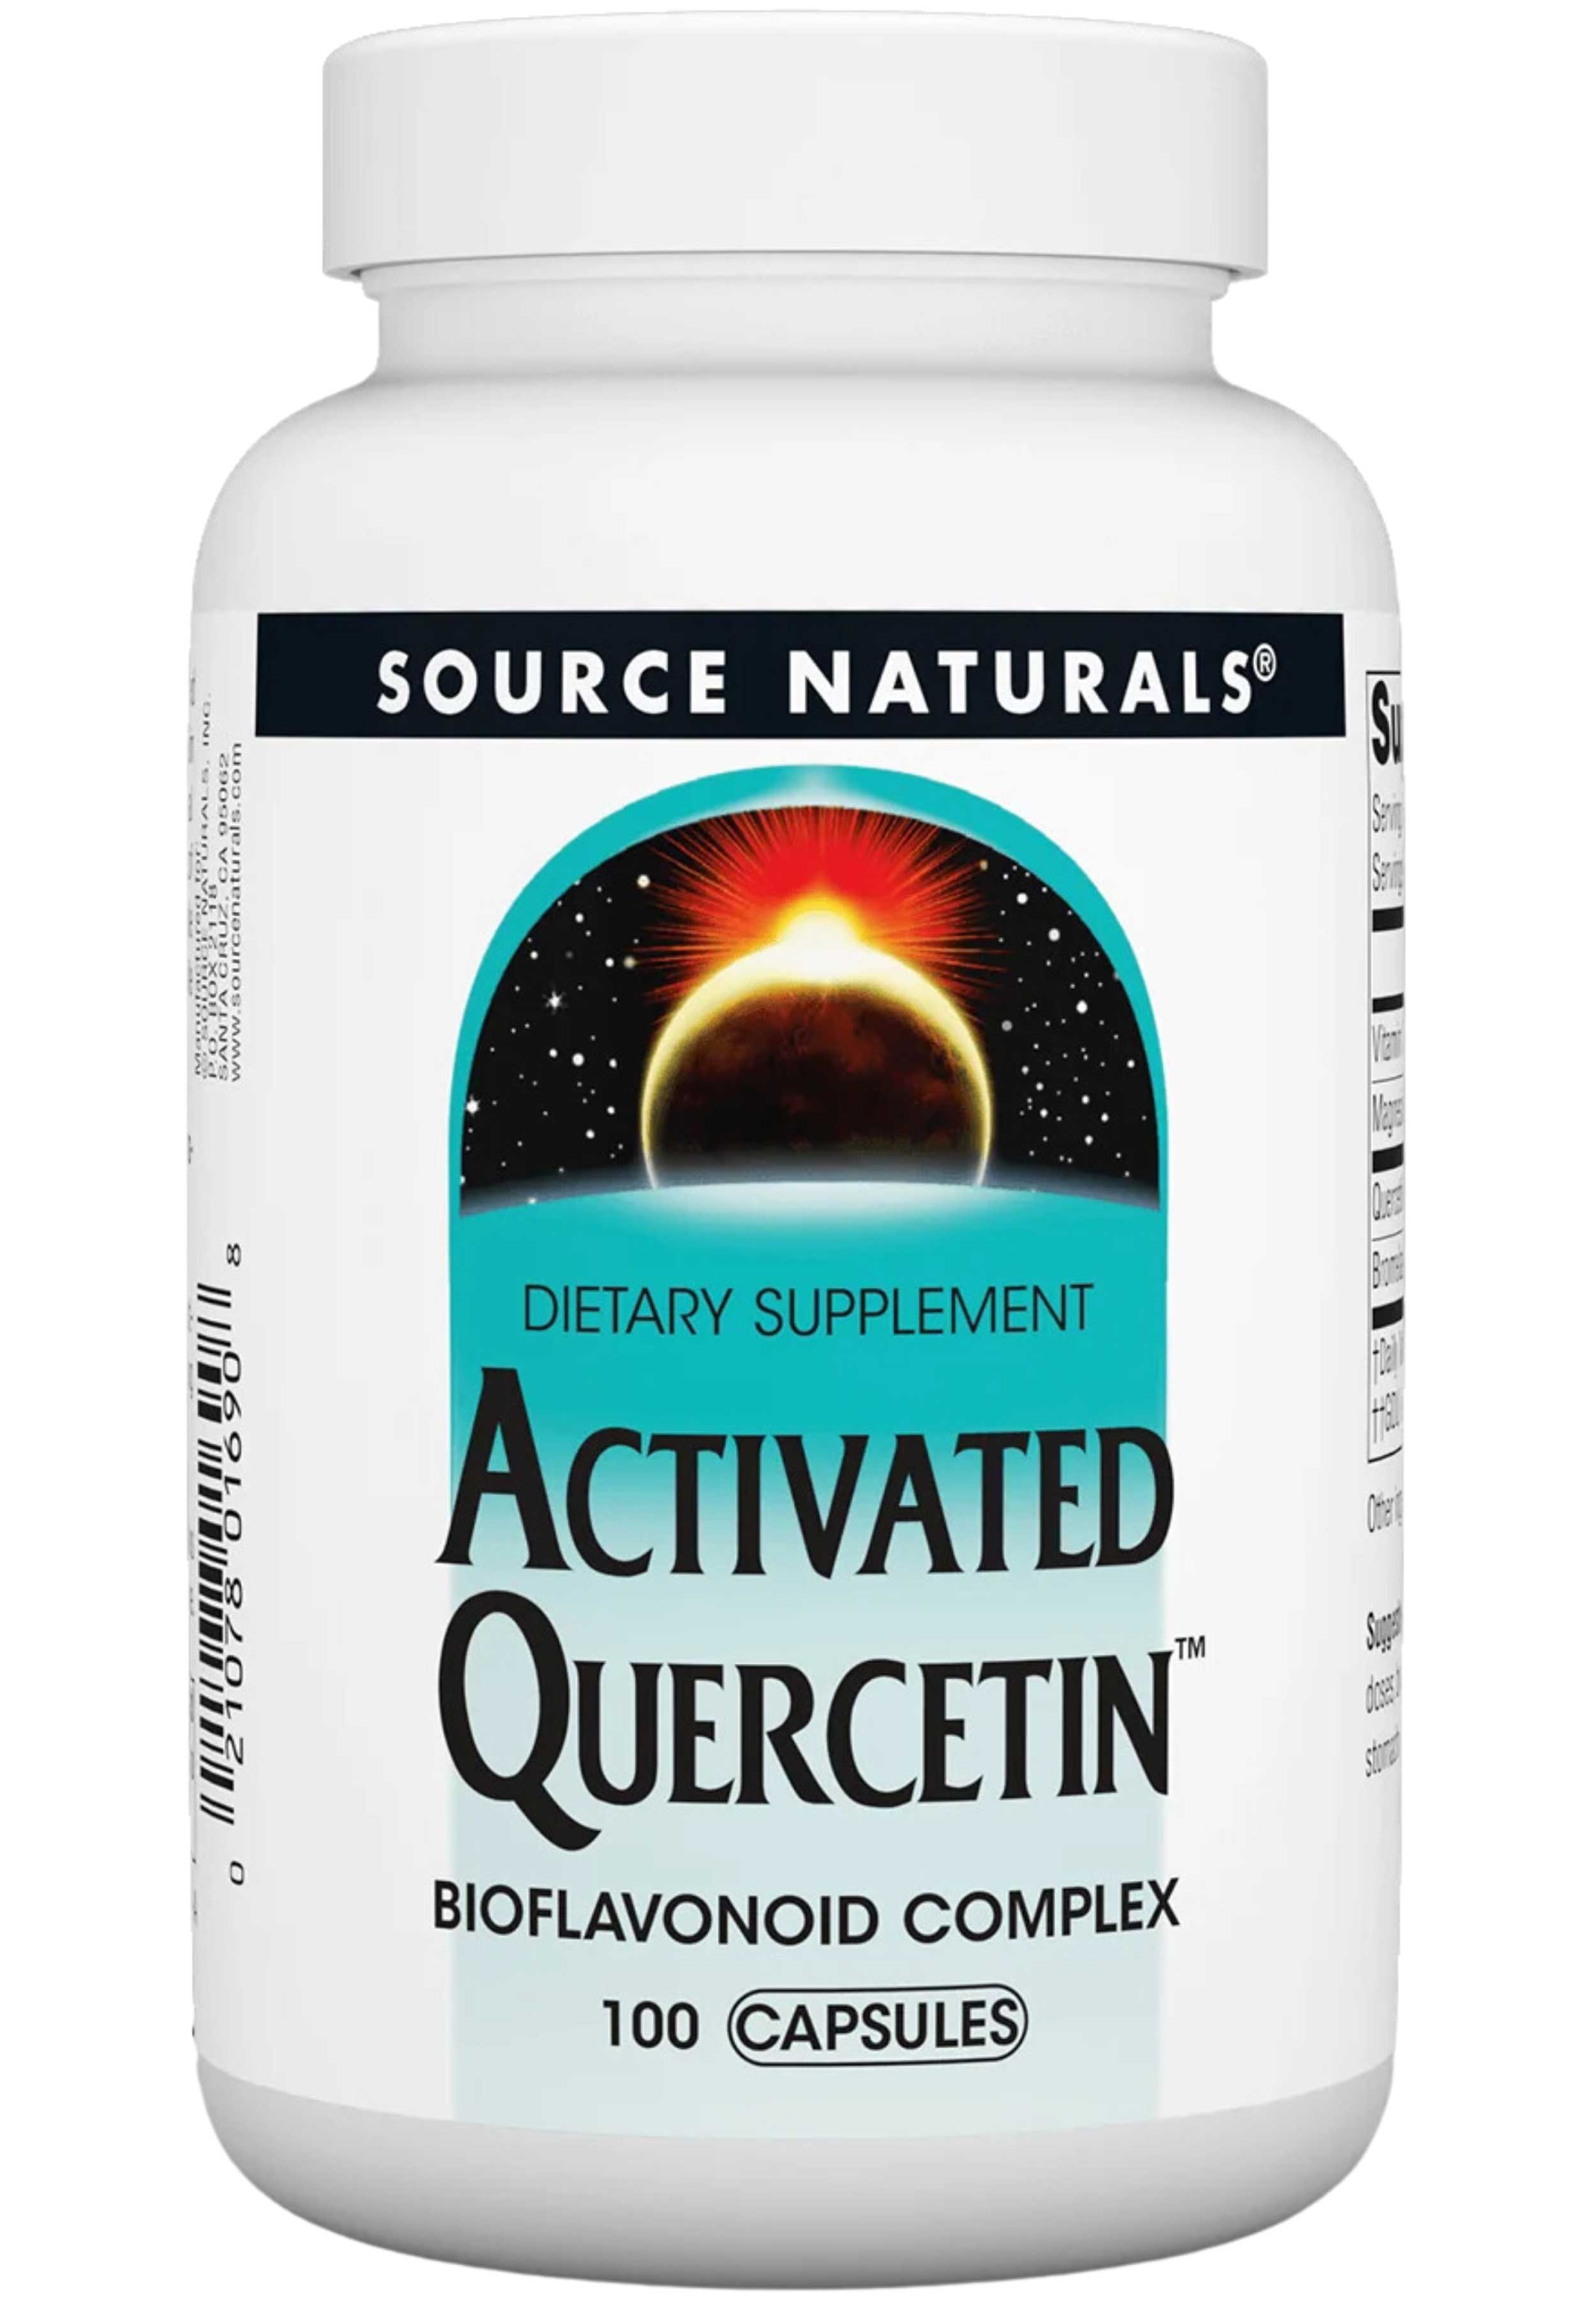 Source Naturals Activated Quercetin Capsules